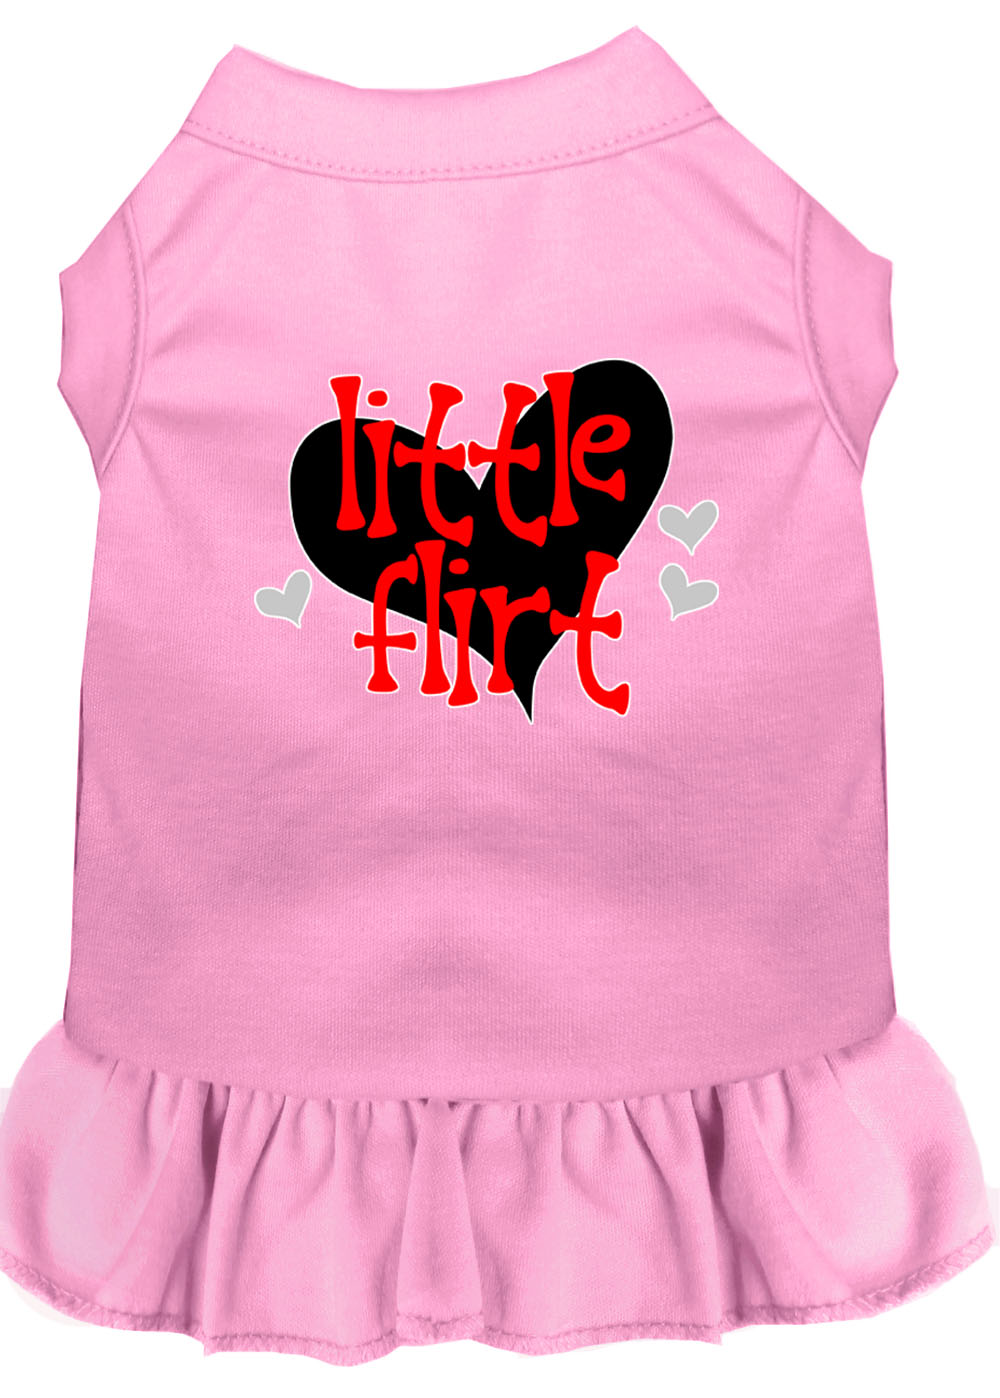 Little Flirt Screen Print Dog Dress Light Pink XS